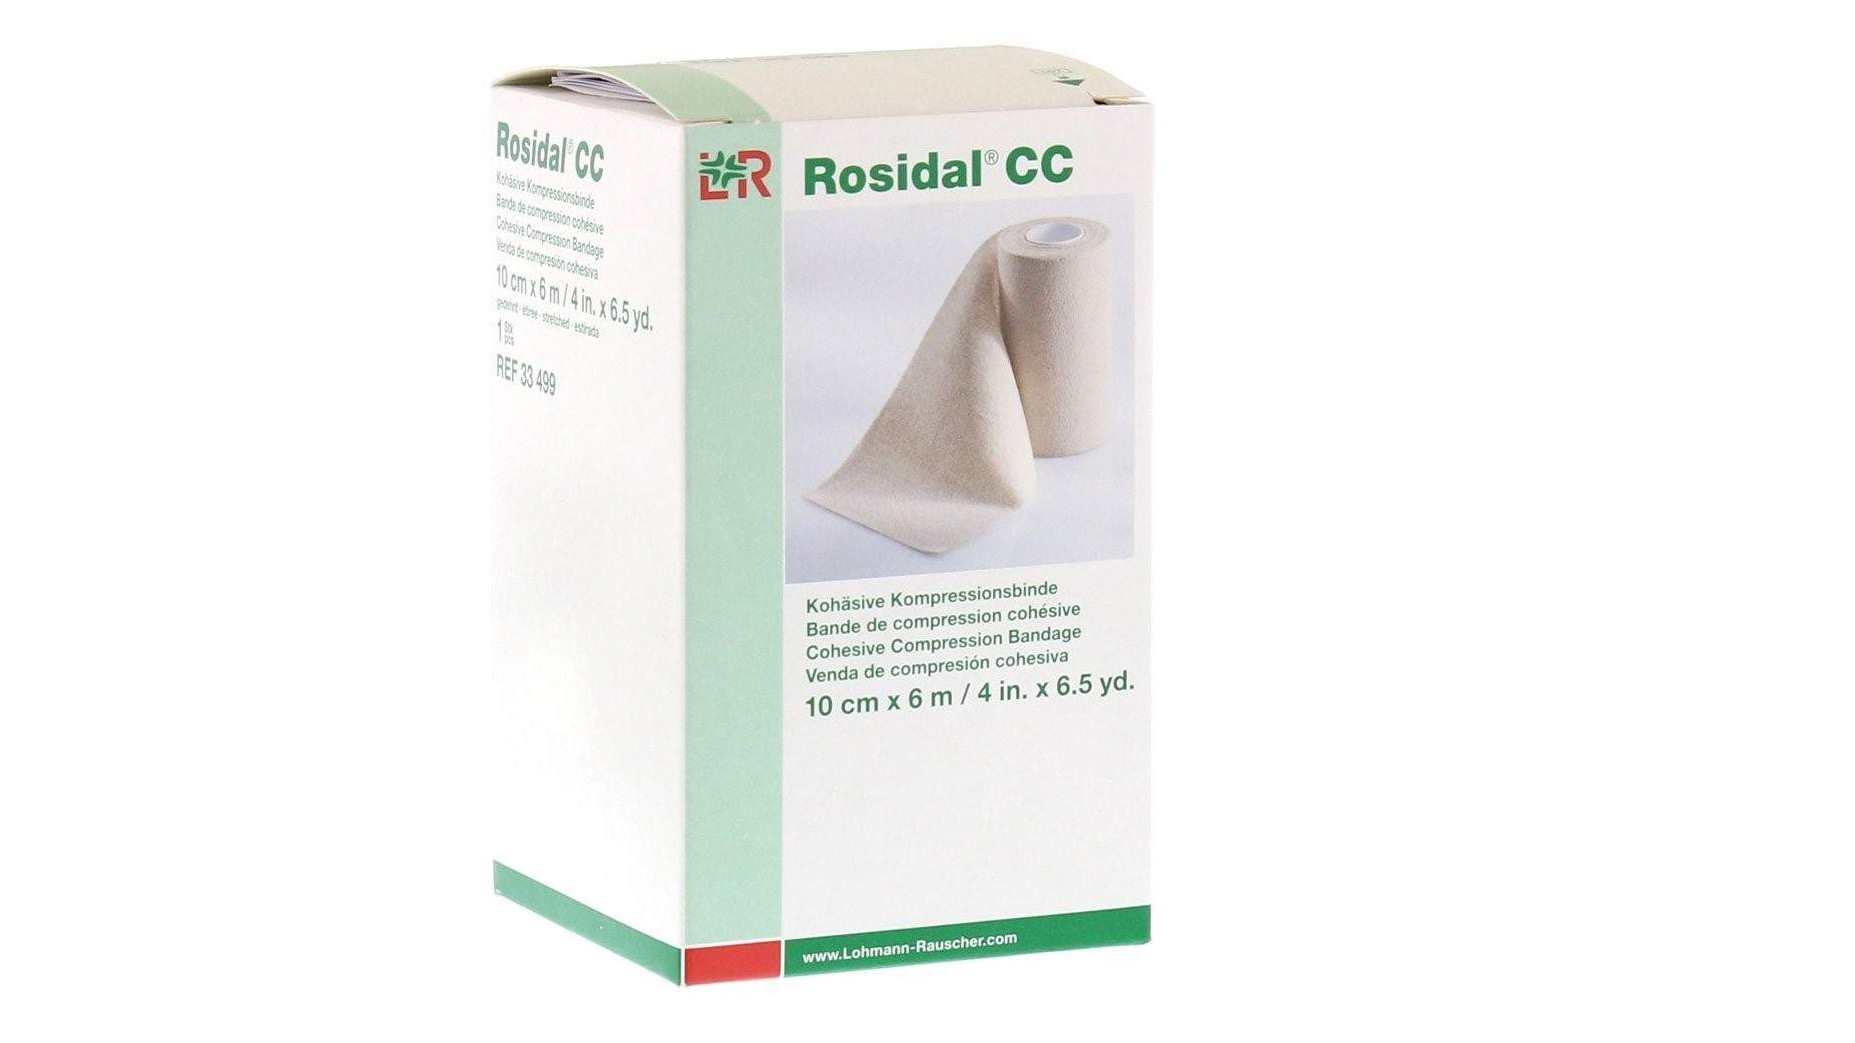 Rosidal CC